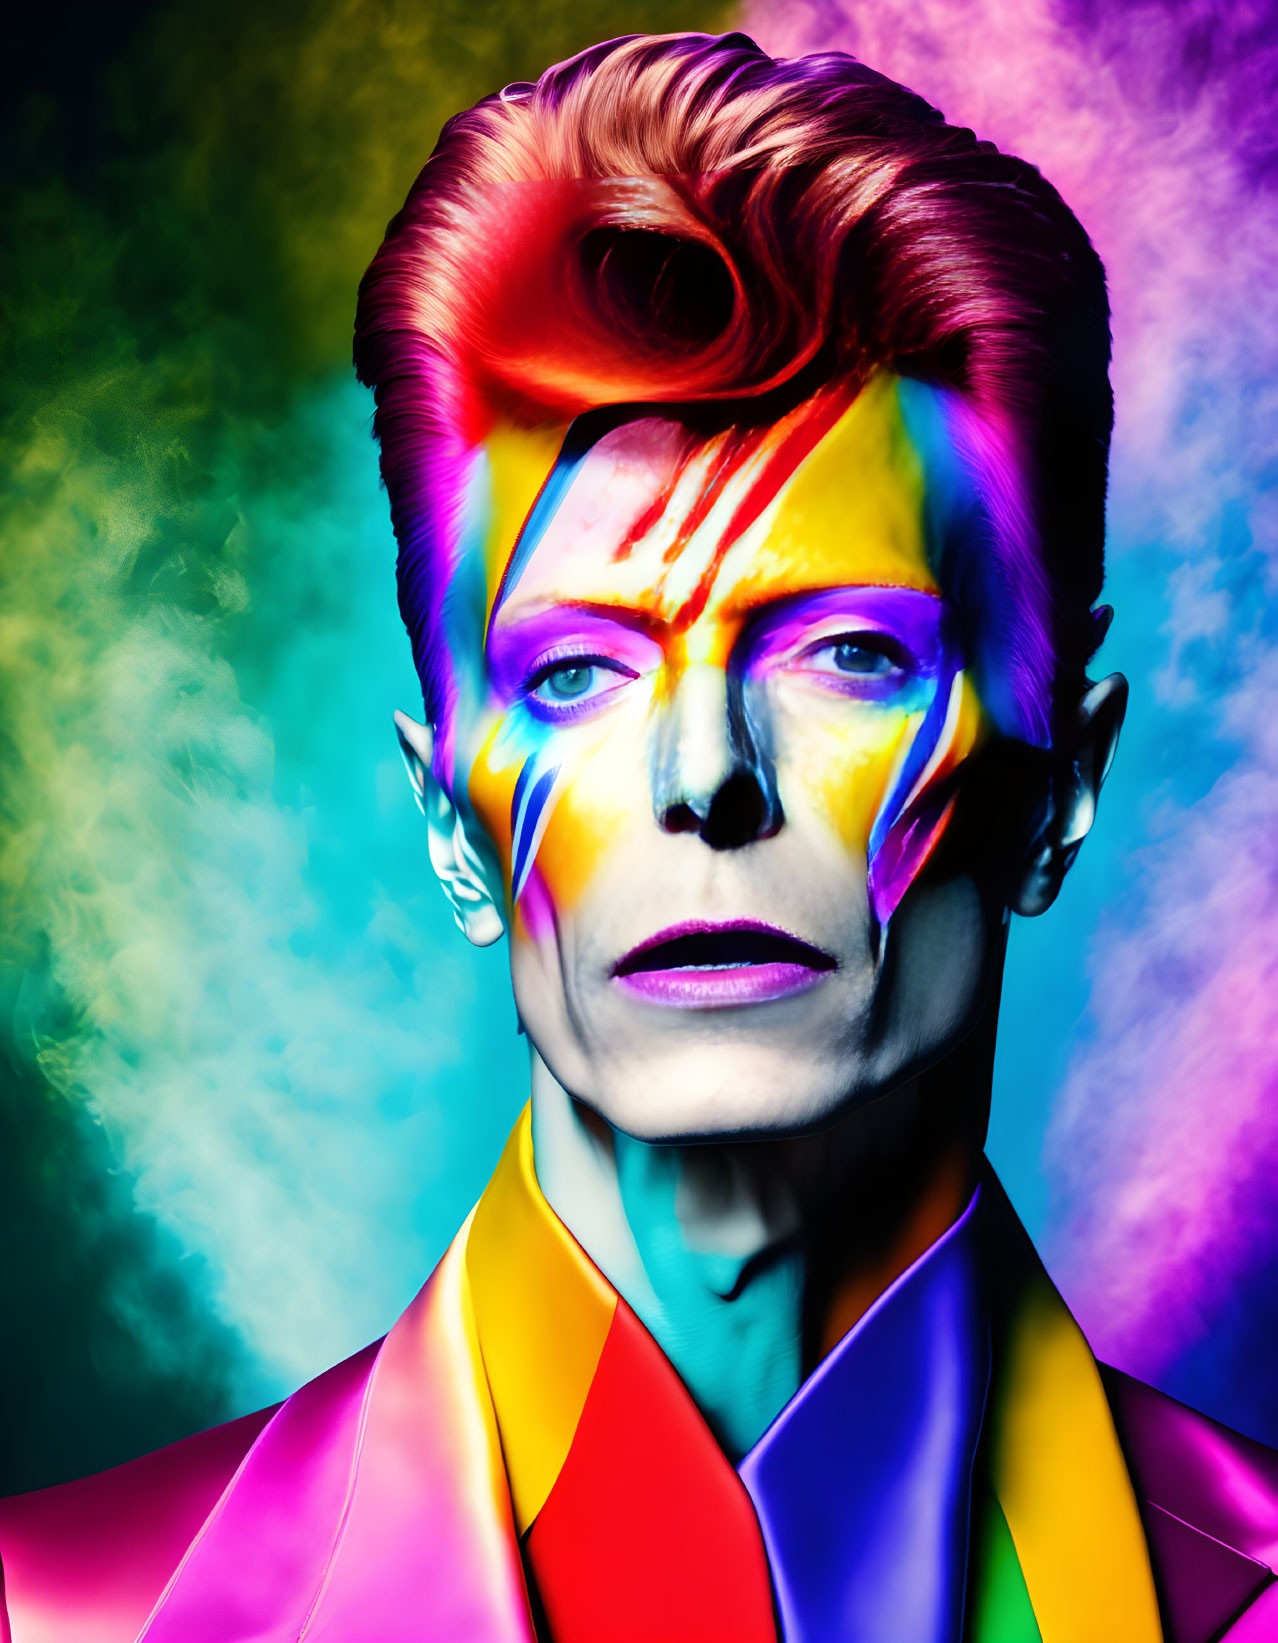 David Bowie In True Pure Magic Colourful